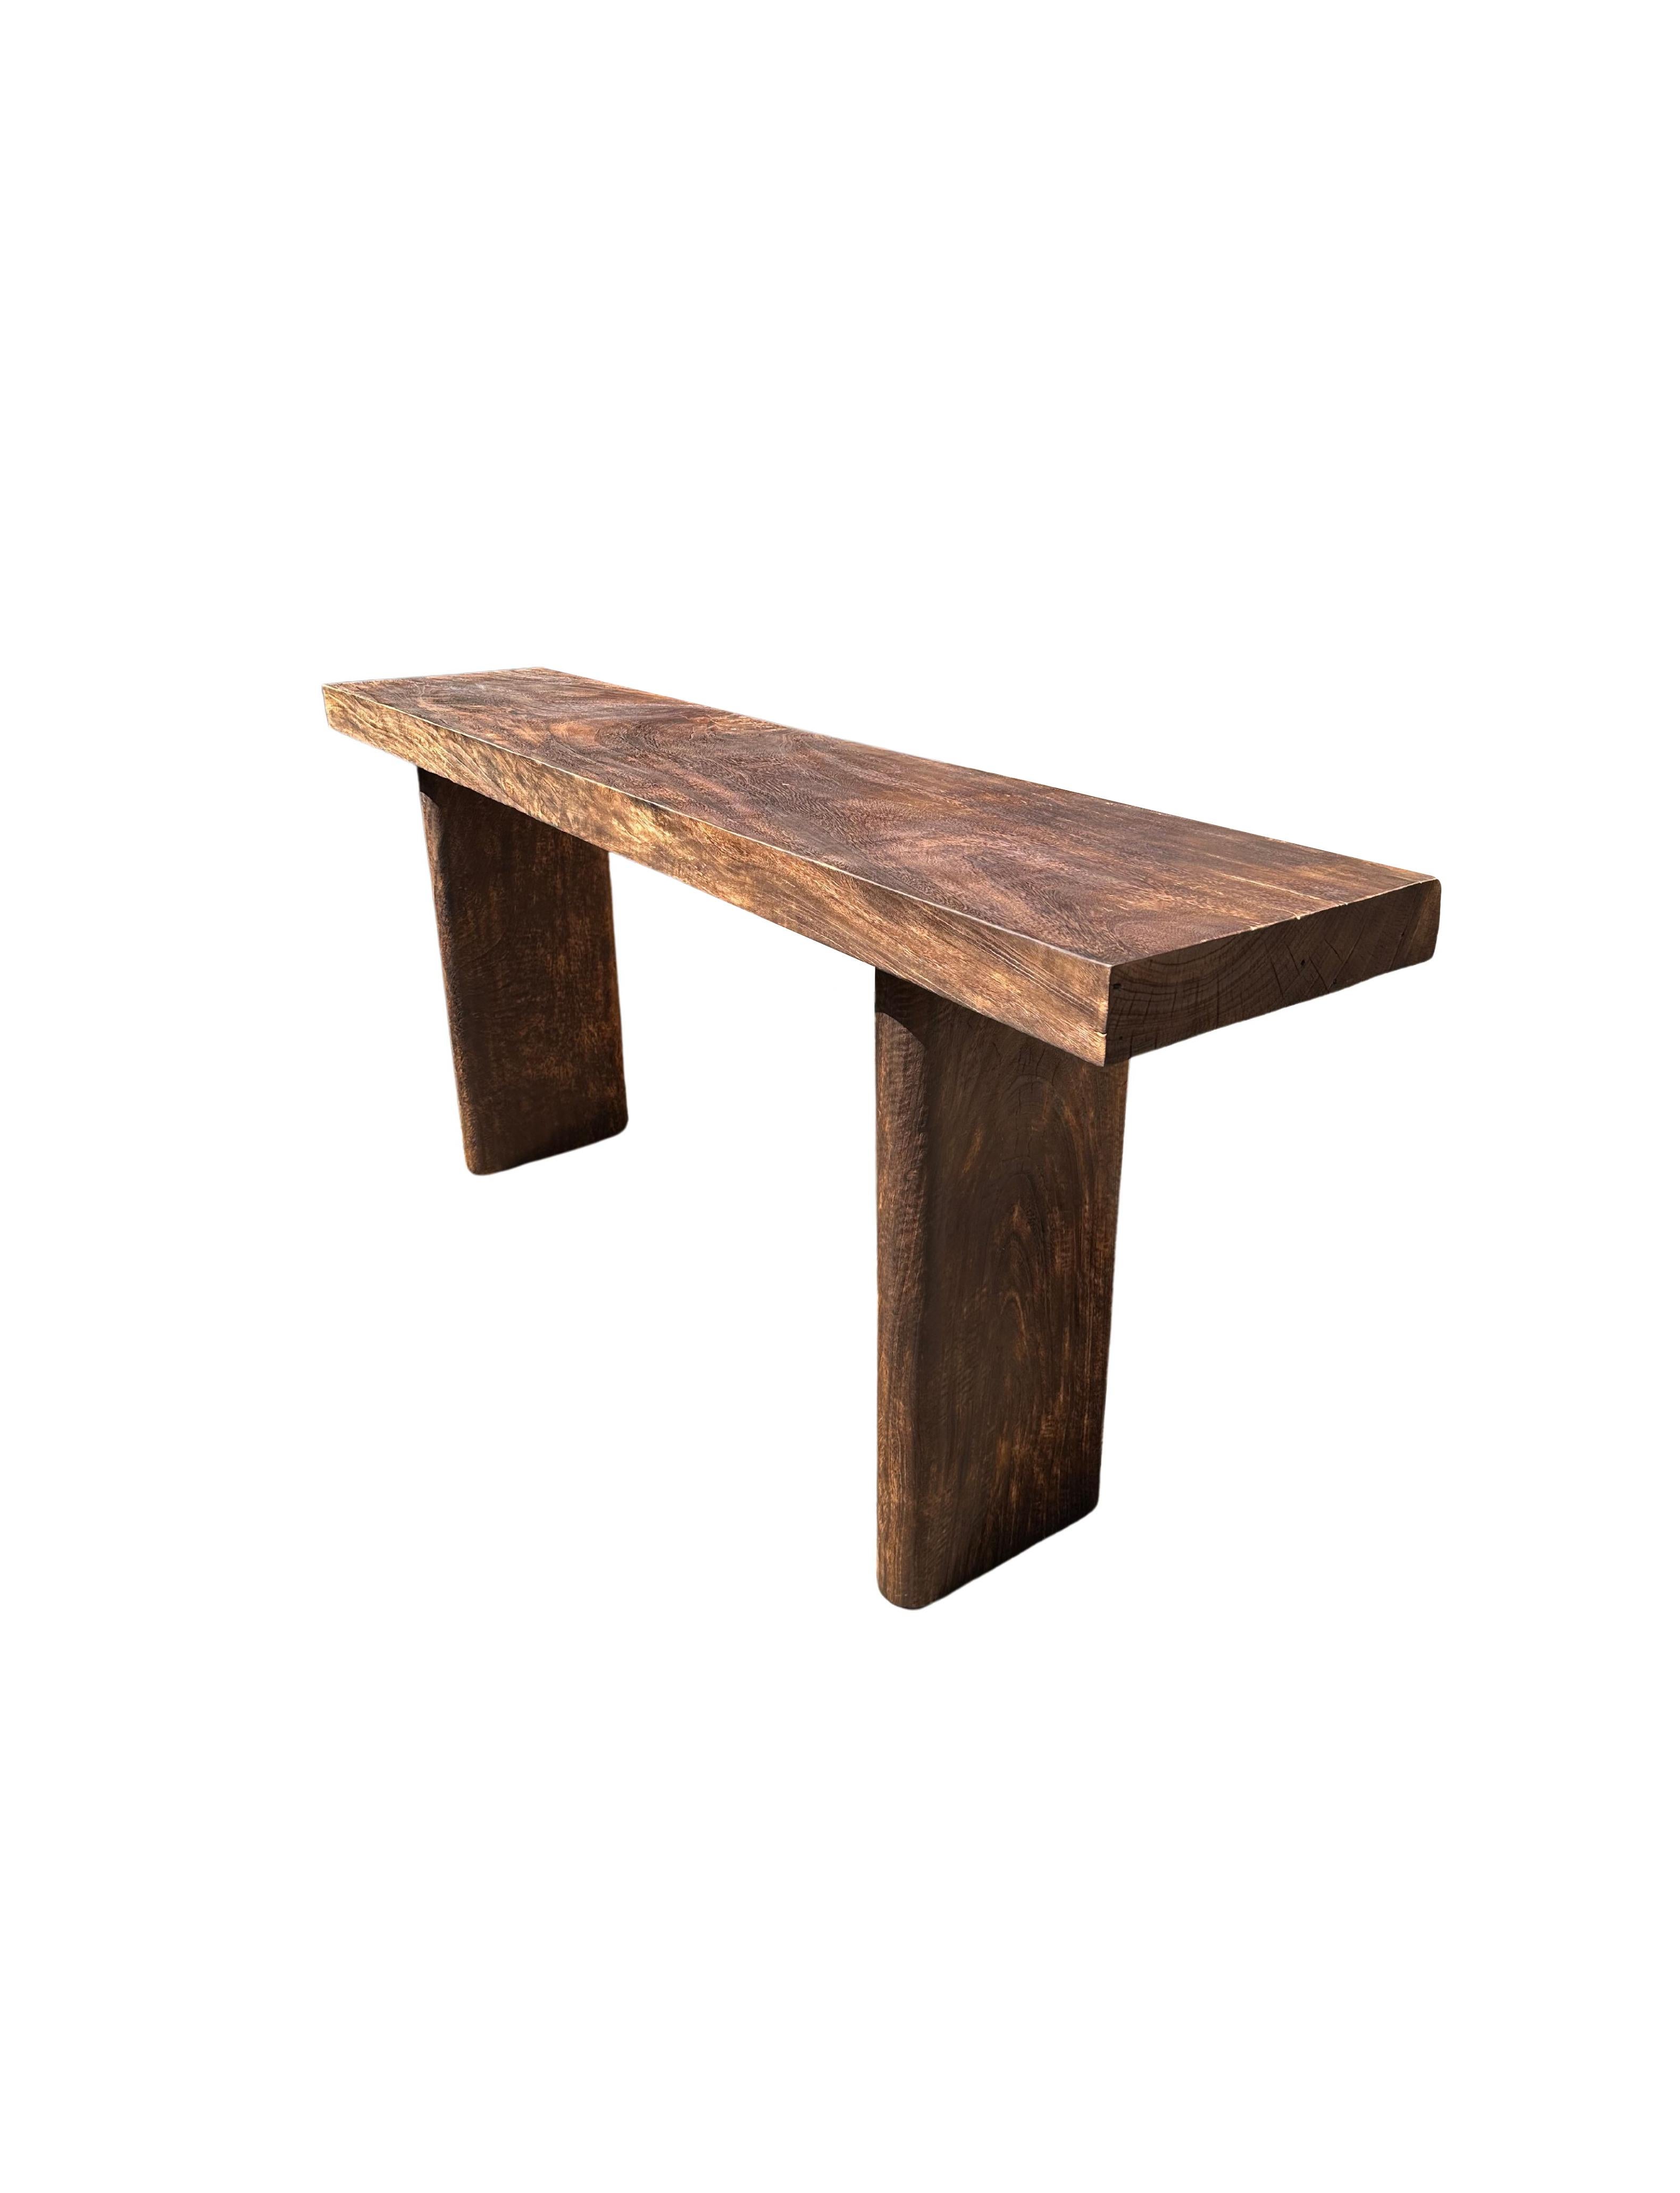 Une table console sculpturale en bois de manguier, fabriquée à partir d'un bloc massif de bois de manguier. Le plateau de la table repose sur deux pieds solides et étroits. Les pieds de la table présentent des bords incurvés, ce qui donne un